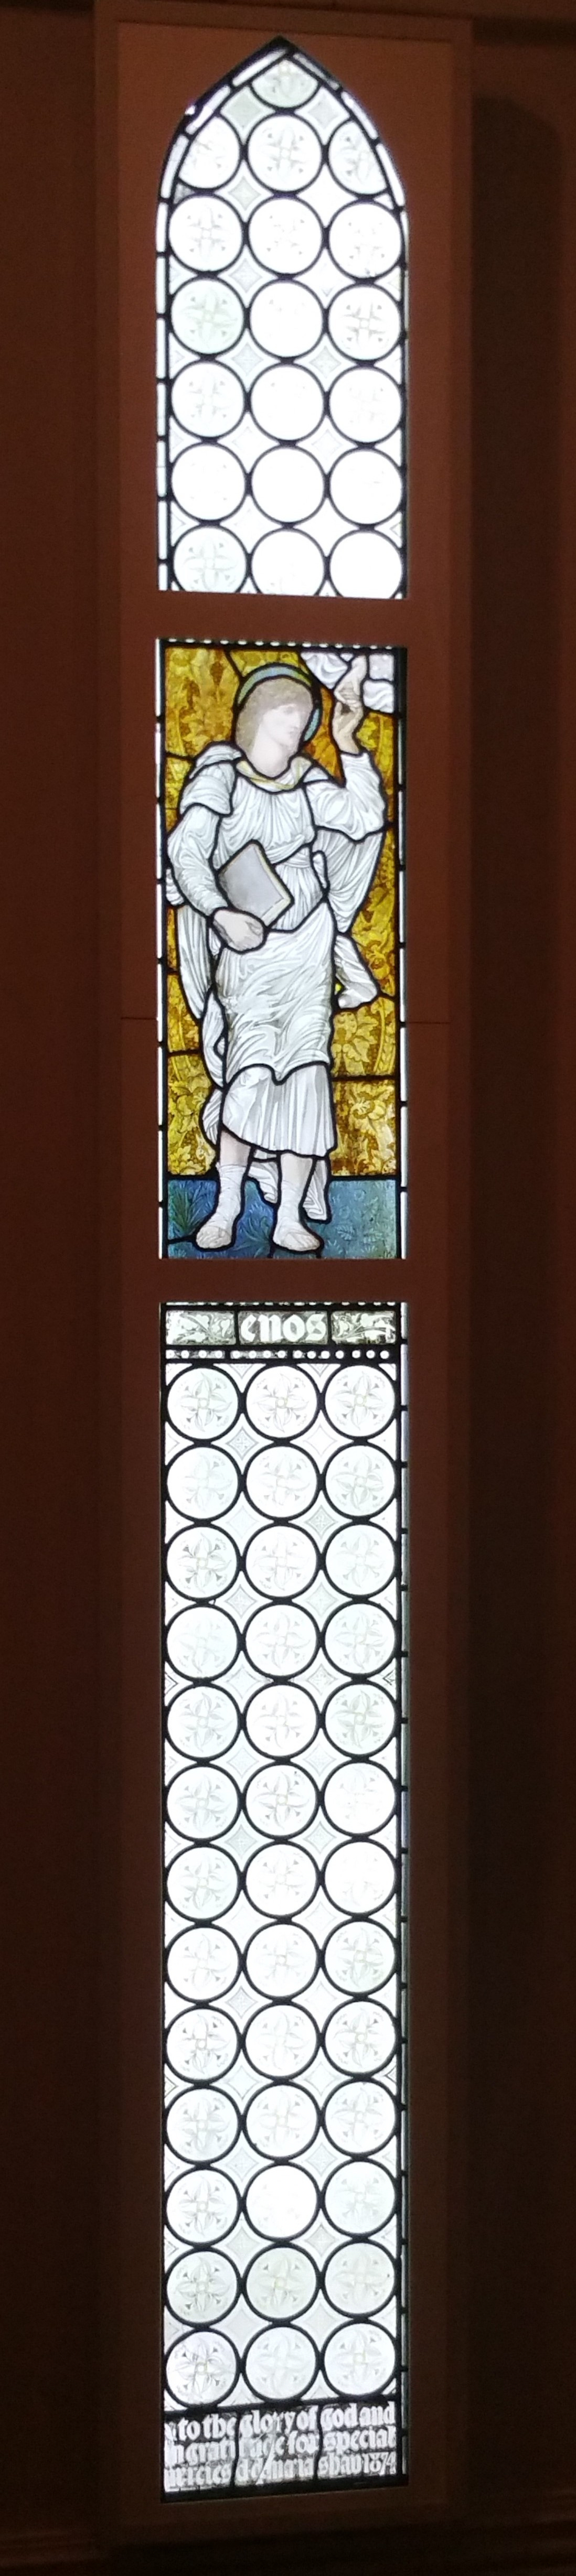 Уильям Моррис. Ангел с книгой. Витражное окно в галерее Уильяма Морриса в Лондоне